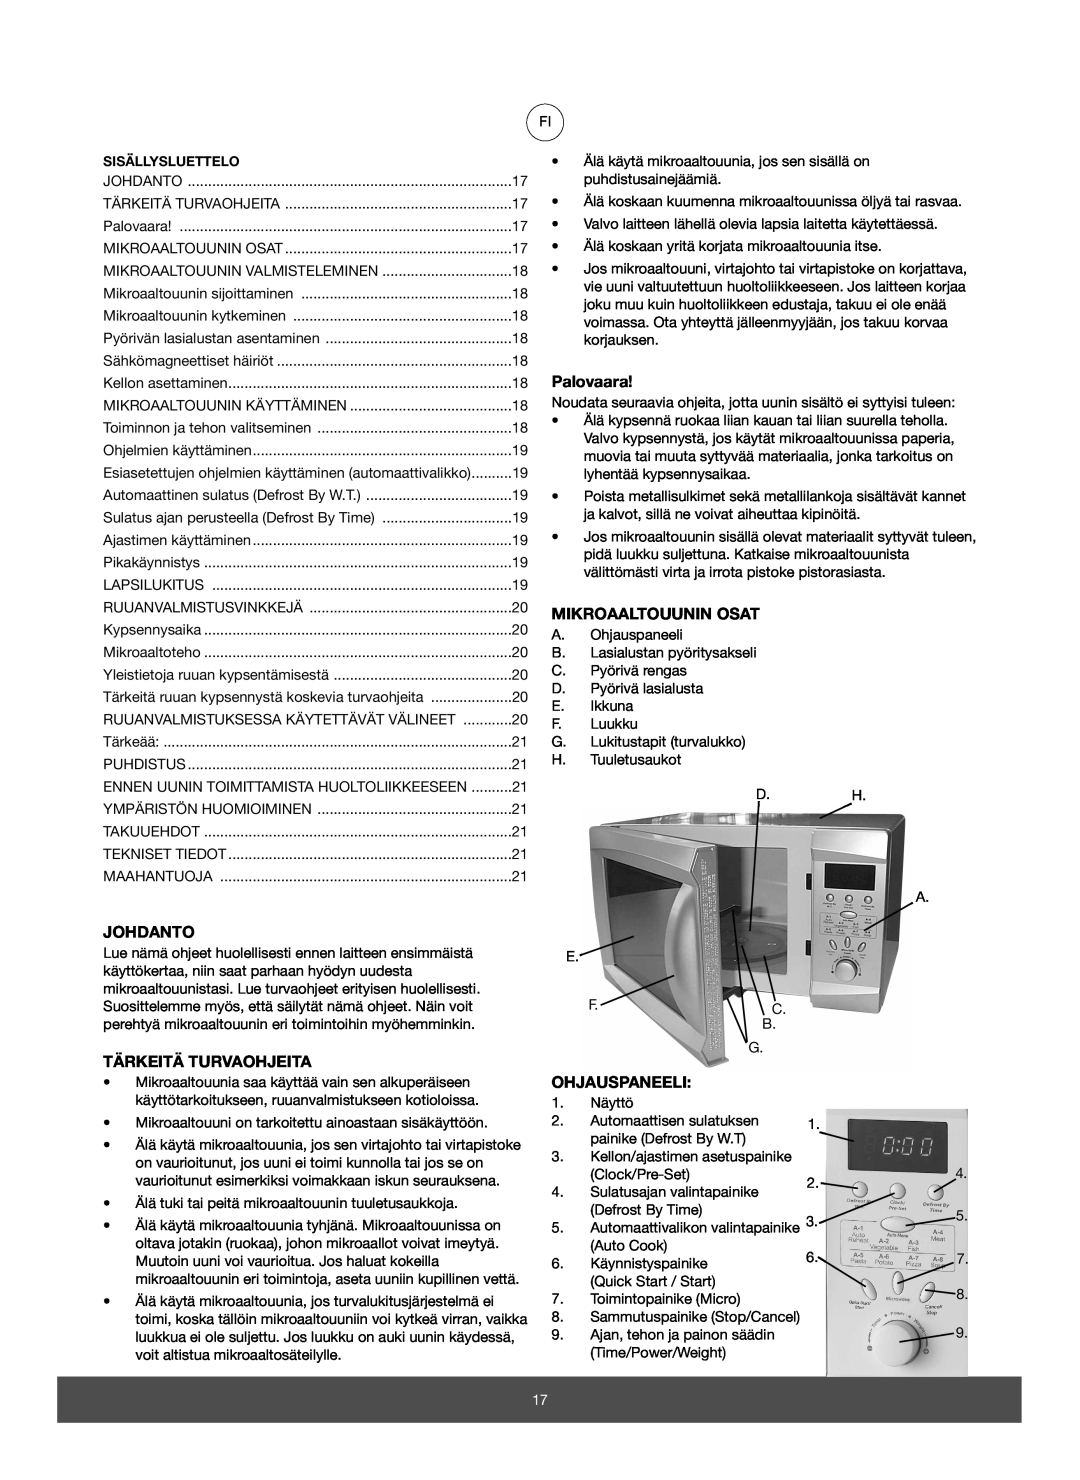 Melissa 653-082 manual Palovaara, Johdanto, Tärkeitä Turvaohjeita, Mikroaaltouunin Osat, Ohjauspaneeli 